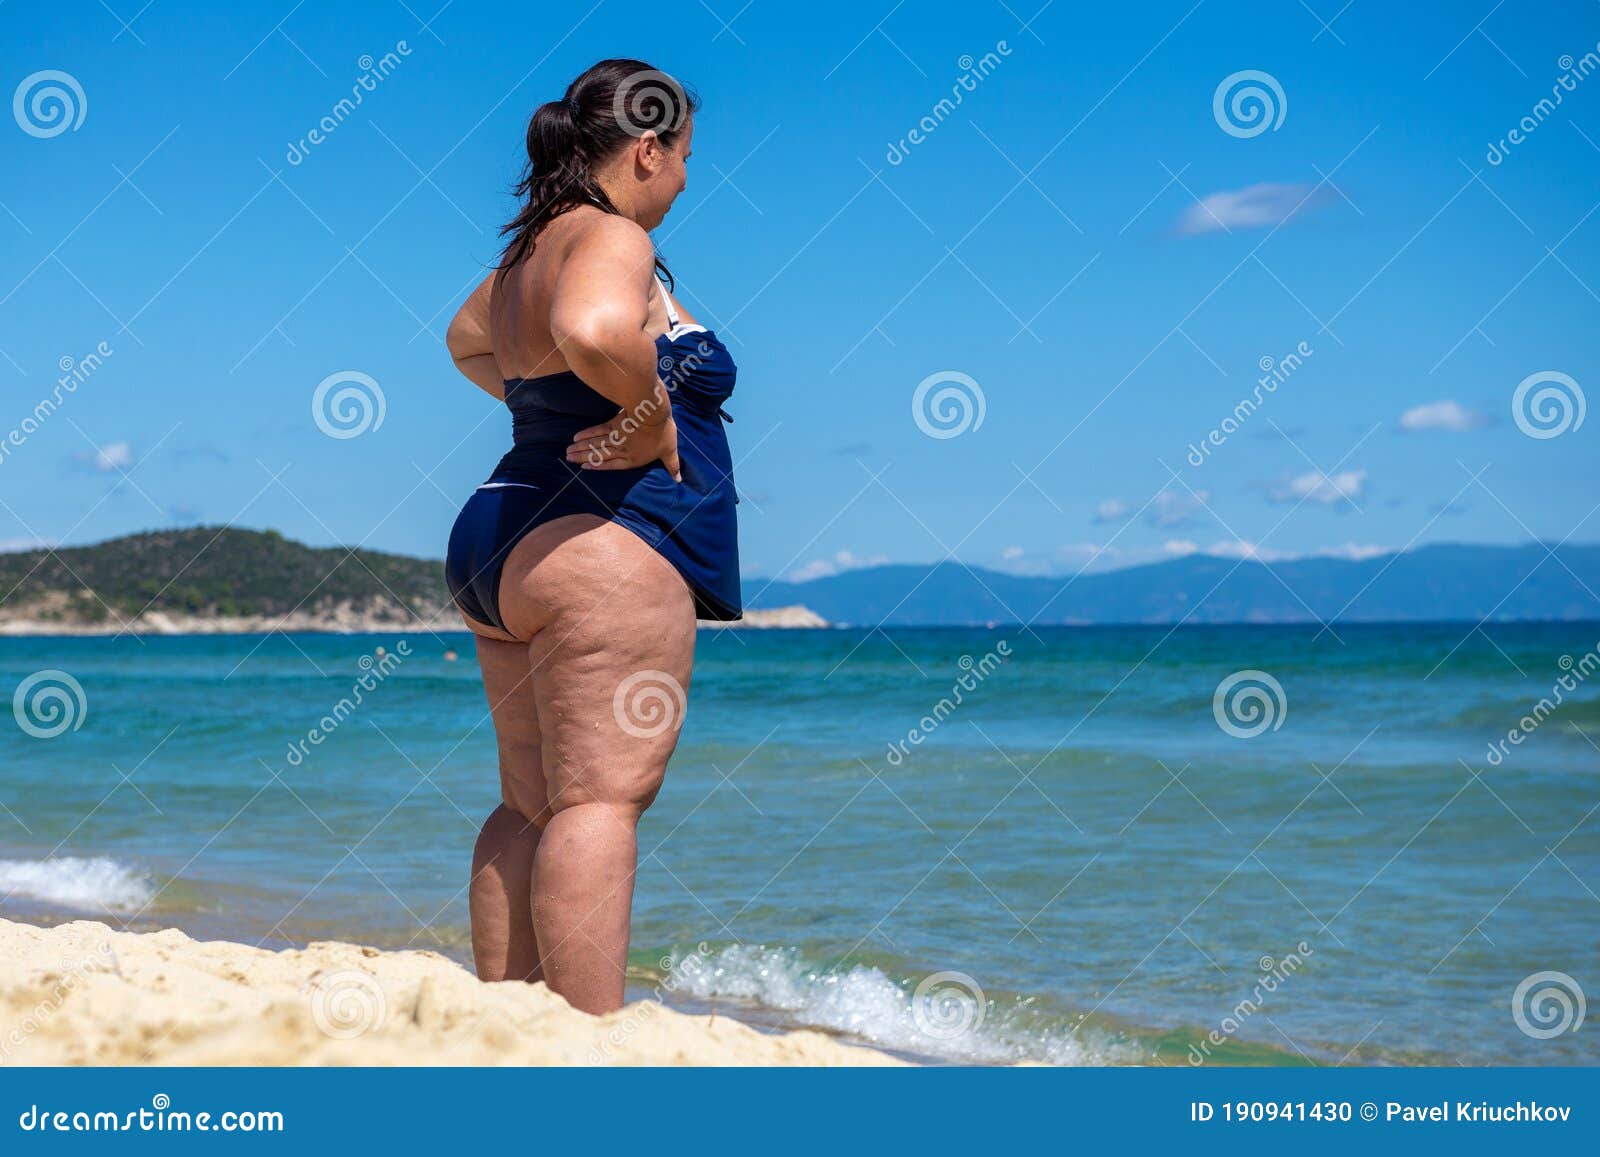 Topless Beach Big Tits